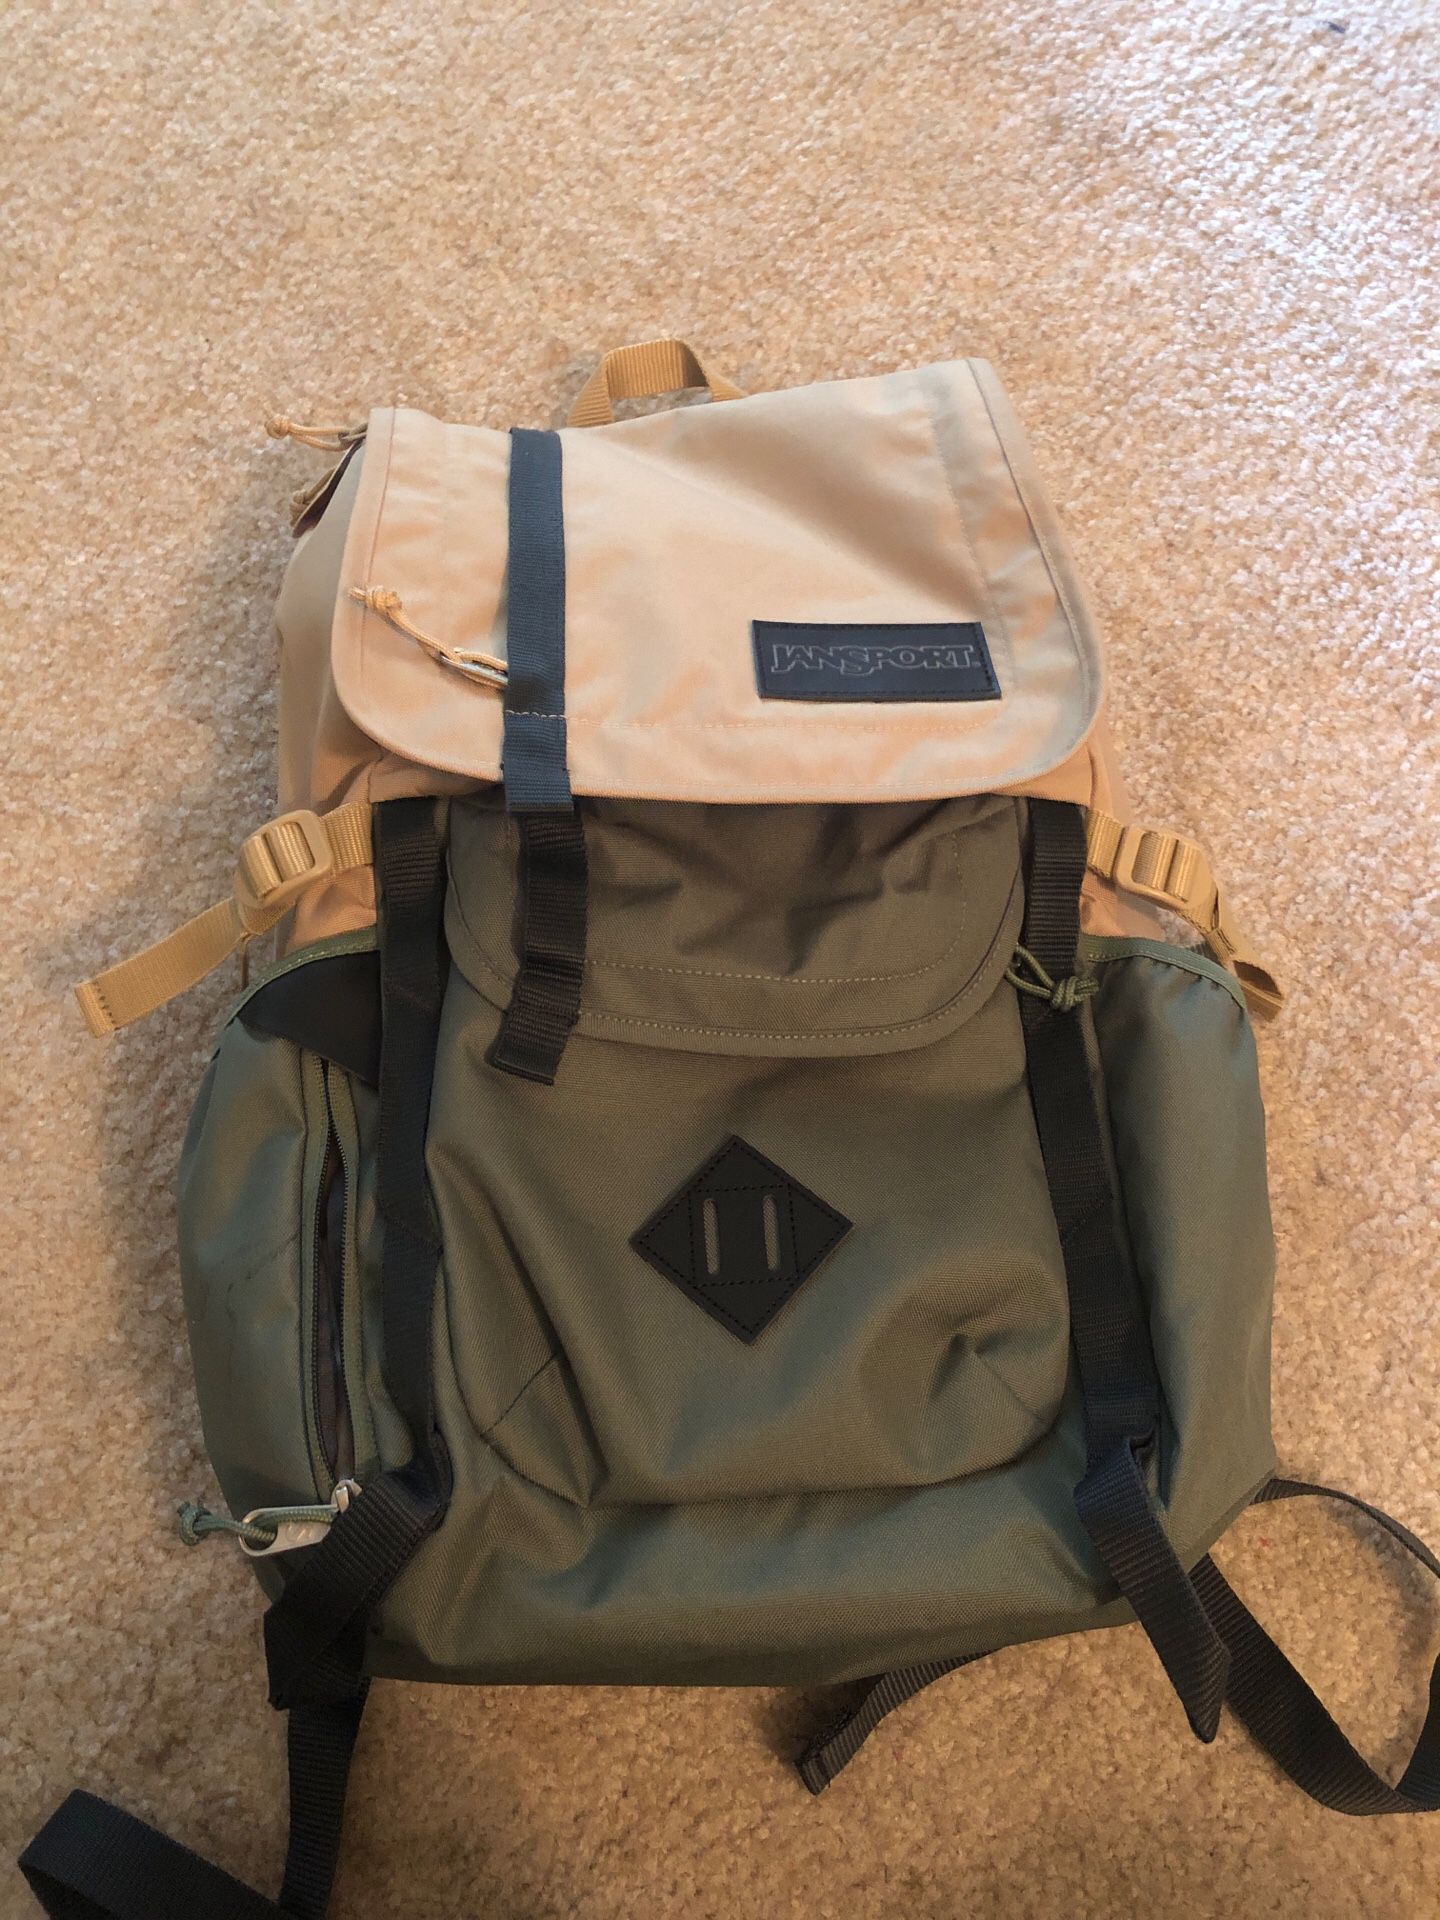 Jansport Hatchet Backpack